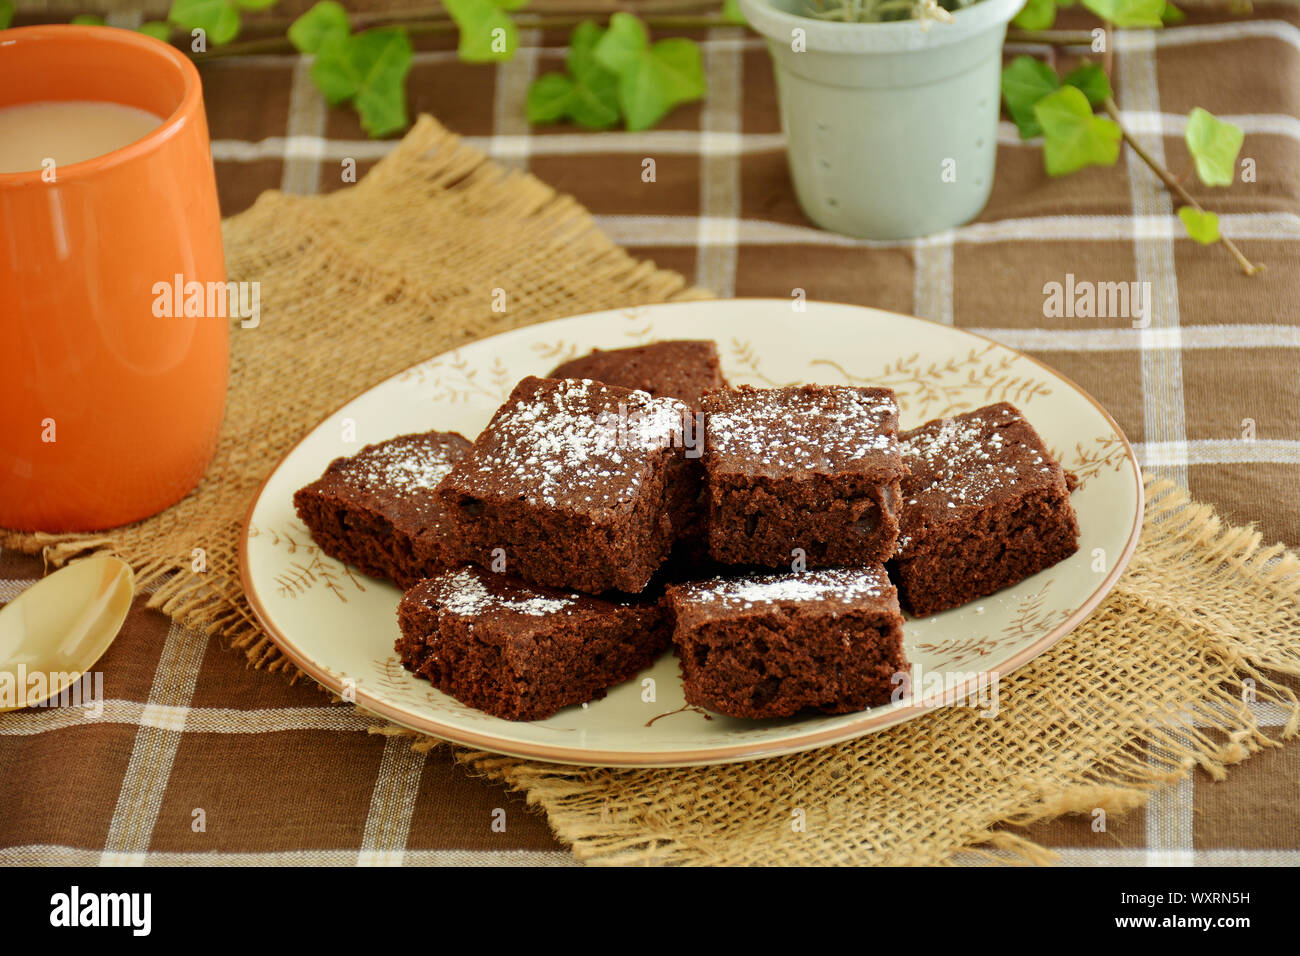 Brownies fait maison et café dans un établissement de l'automne. Format horizontal avec l'accent sur l'avant de brownies. Banque D'Images